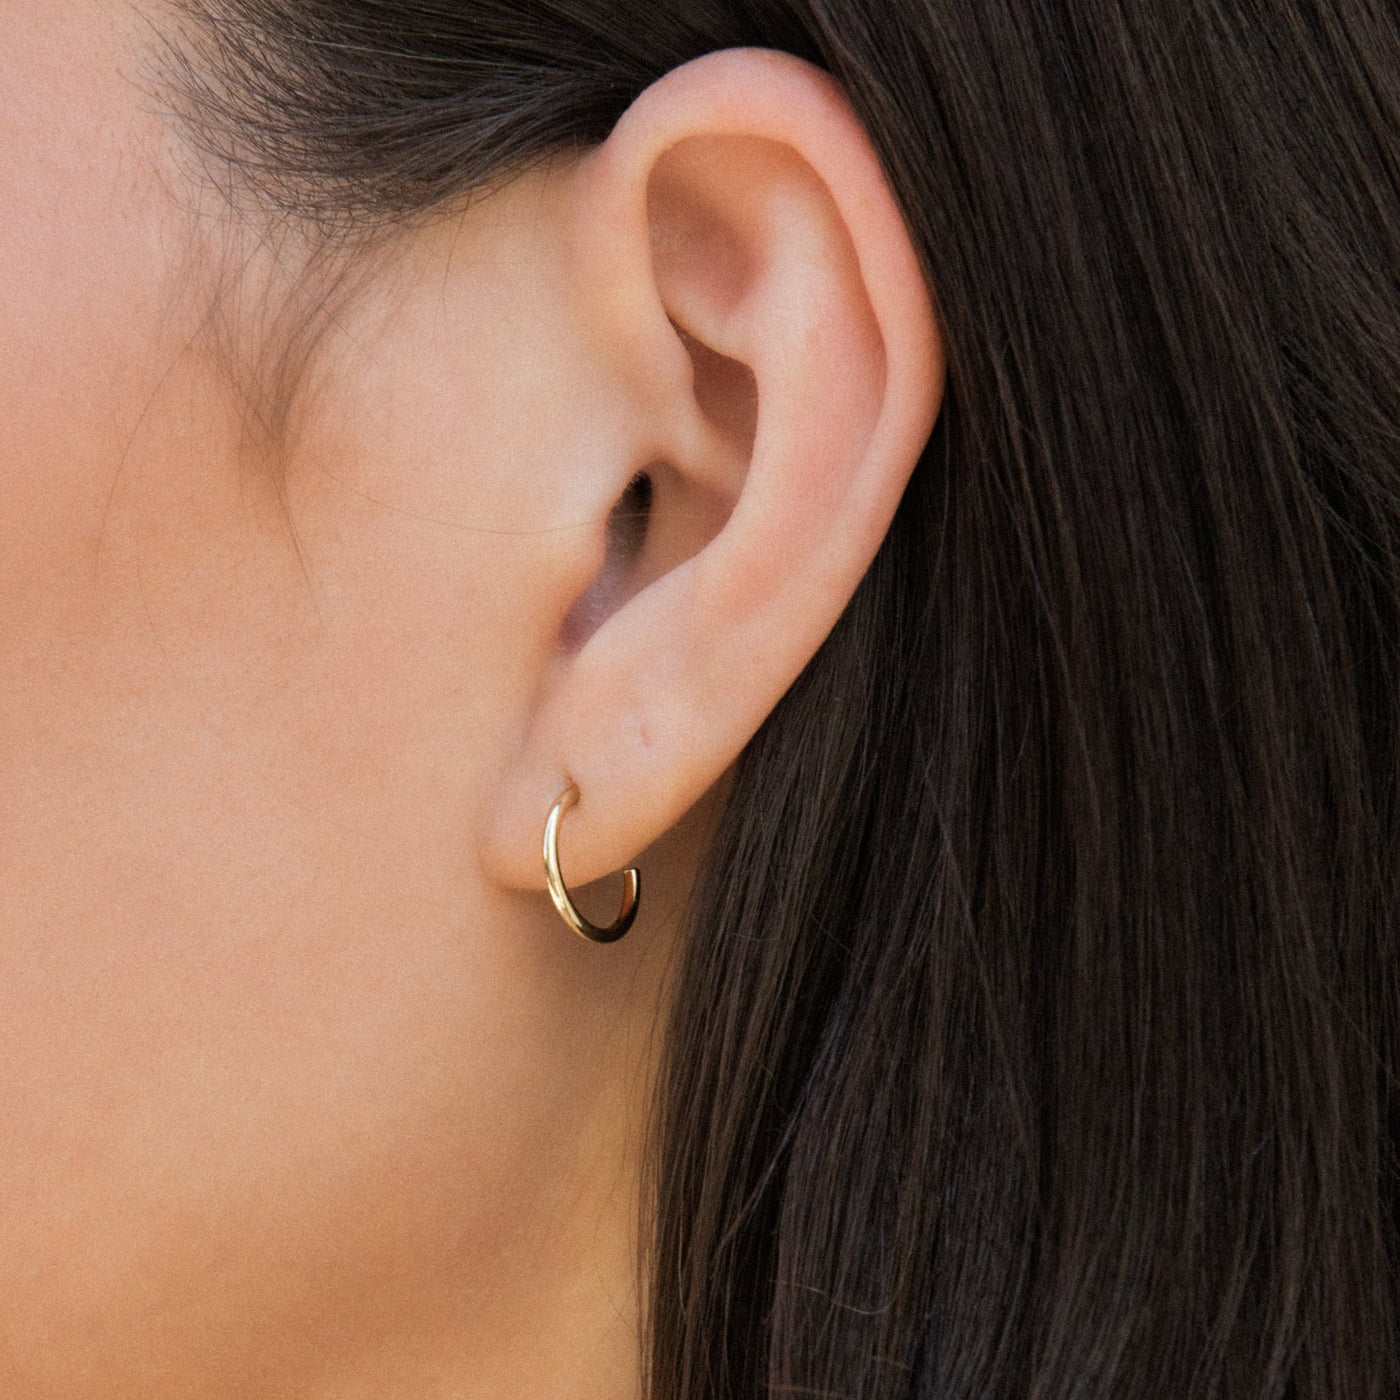 Small (12mm) Open Hoop Earrings, Medium (20mm) Open Hoop Earrings, Large (38mm) Open Hoop Earrings